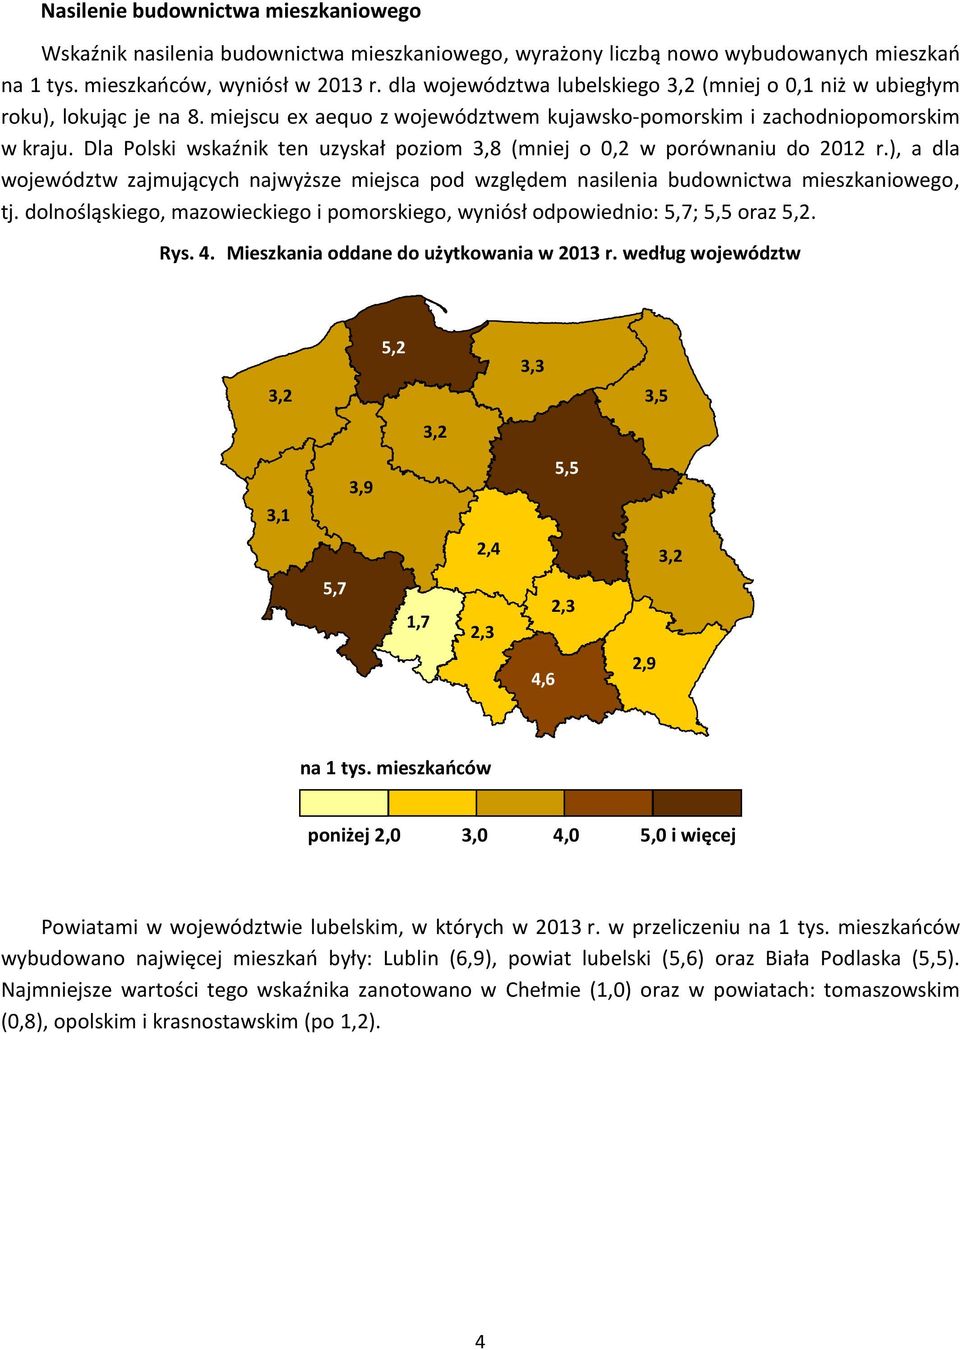 Dla Polski wskaźnik ten uzyskał poziom 3,8 (mniej o 0,2 w porównaniu do 2012 r.), a dla województw zajmujących najwyższe miejsca pod względem nasilenia budownictwa mieszkaniowego, tj.